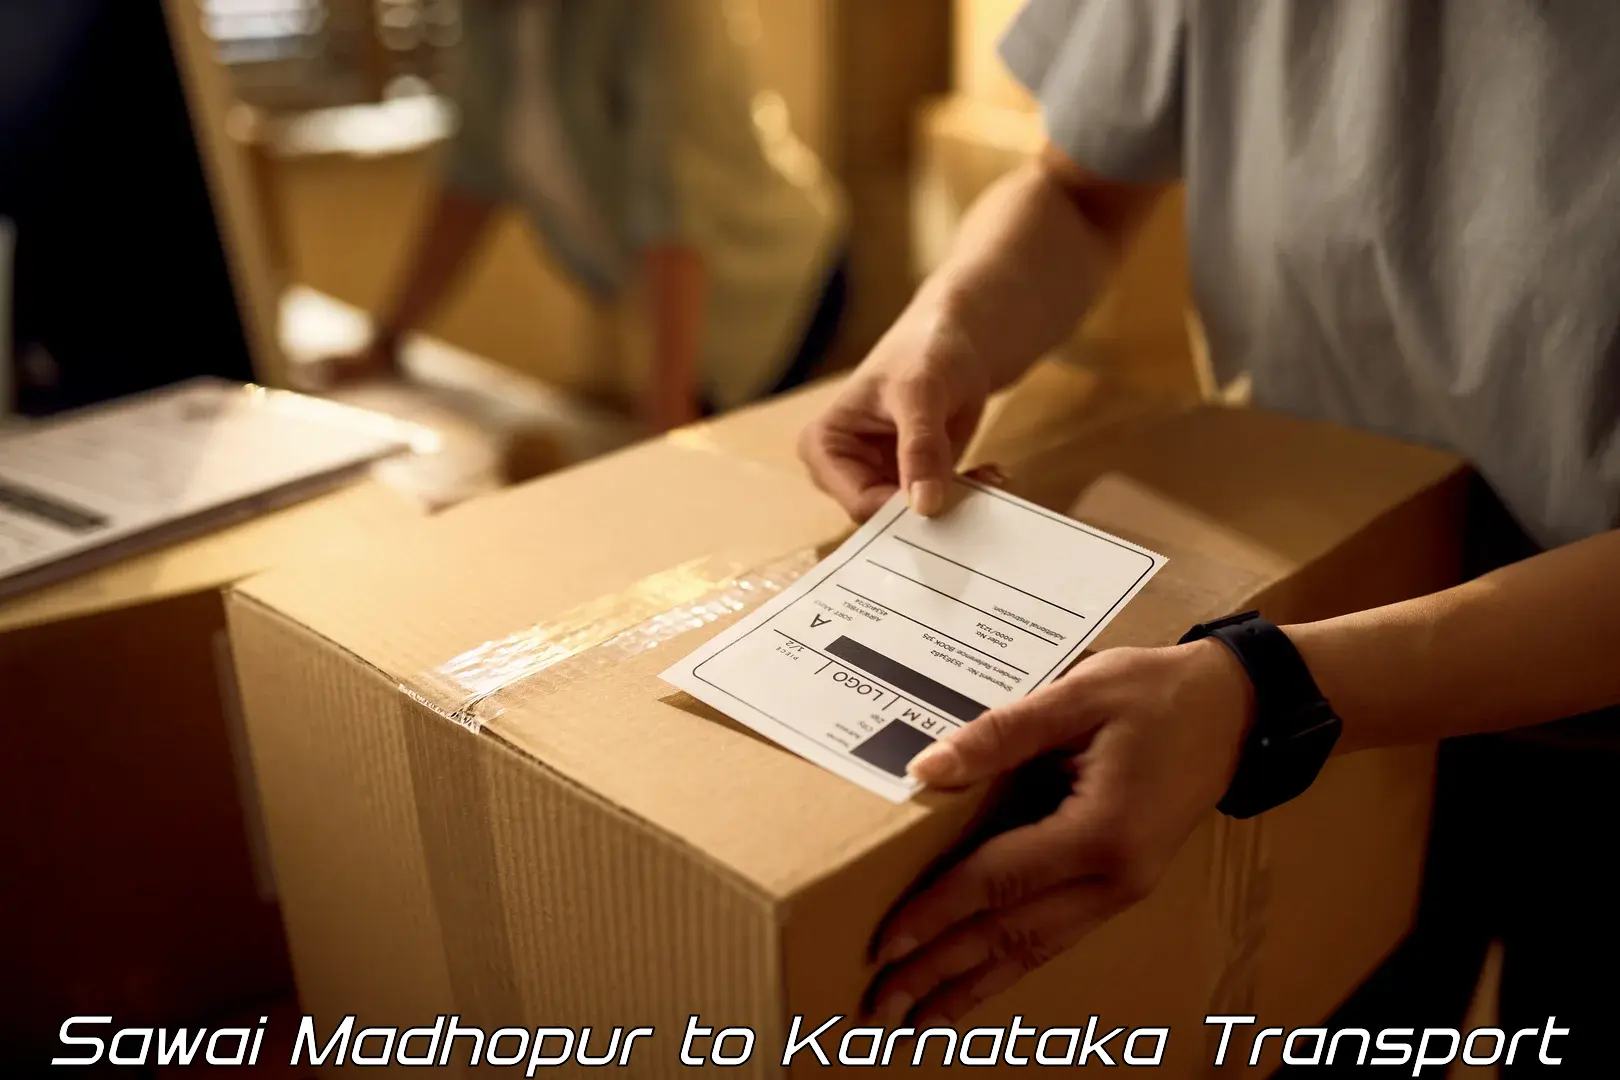 Transport in sharing Sawai Madhopur to Madhugiri